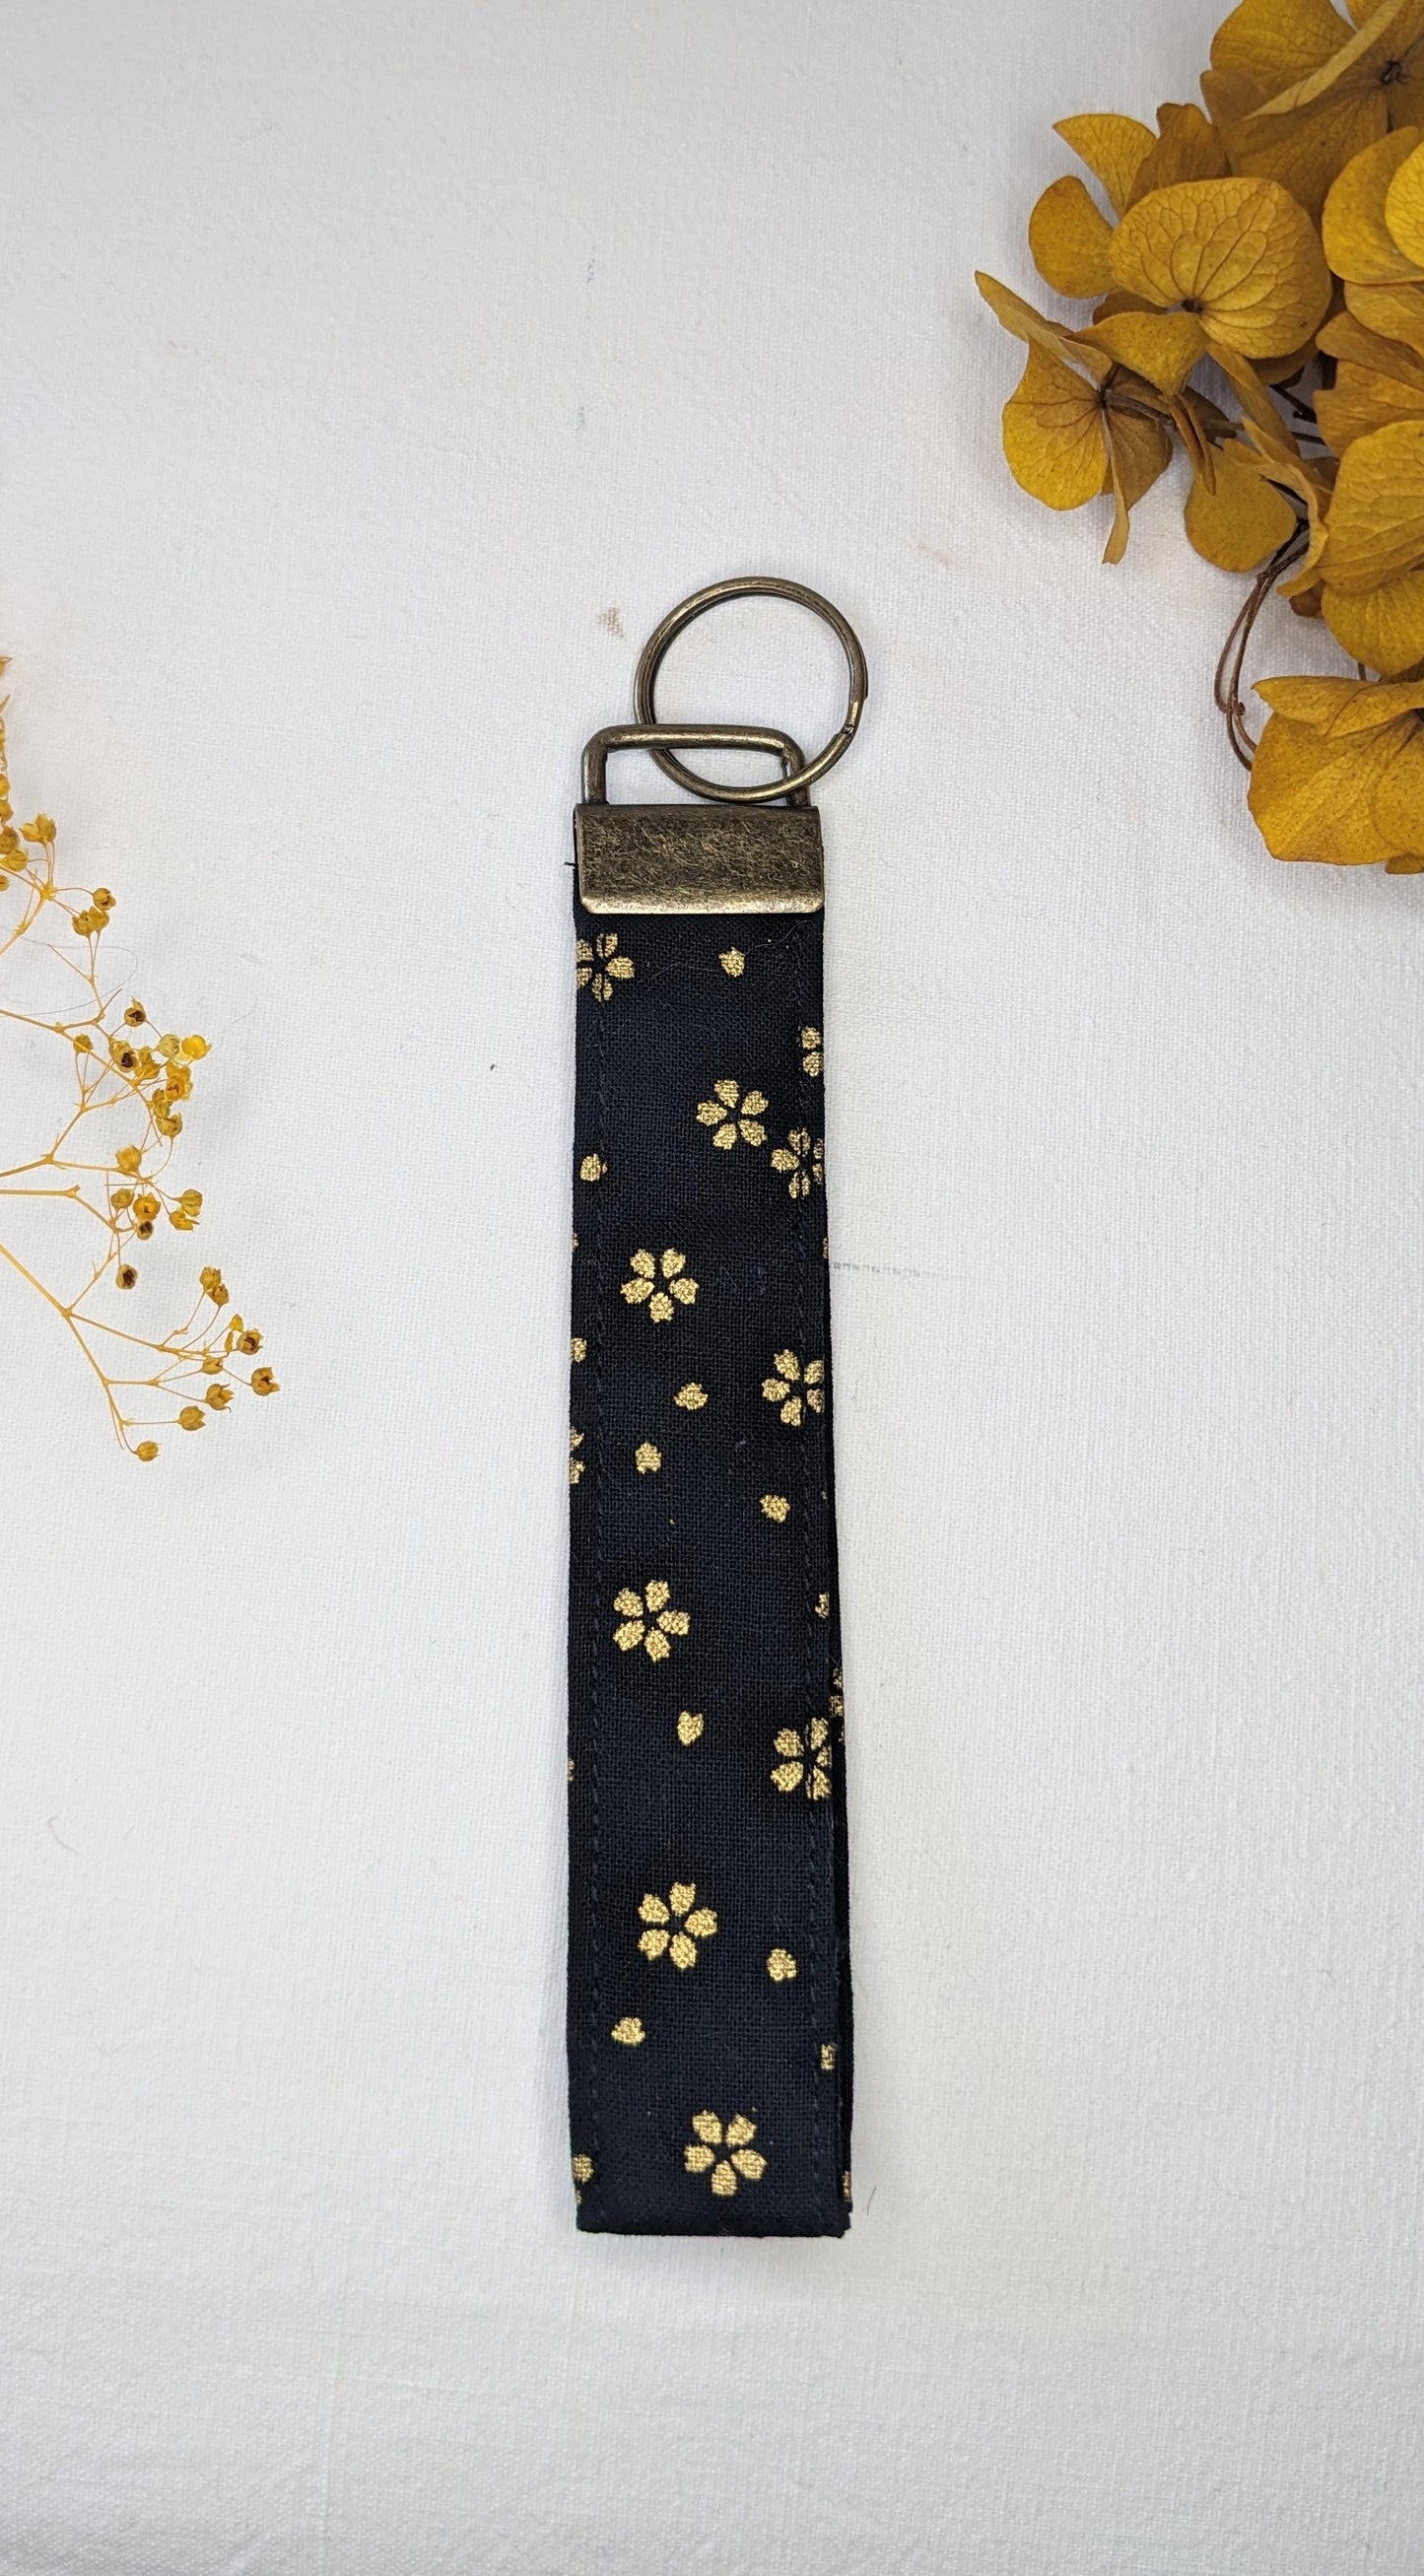 Porte-clés noir/fleurs dorées